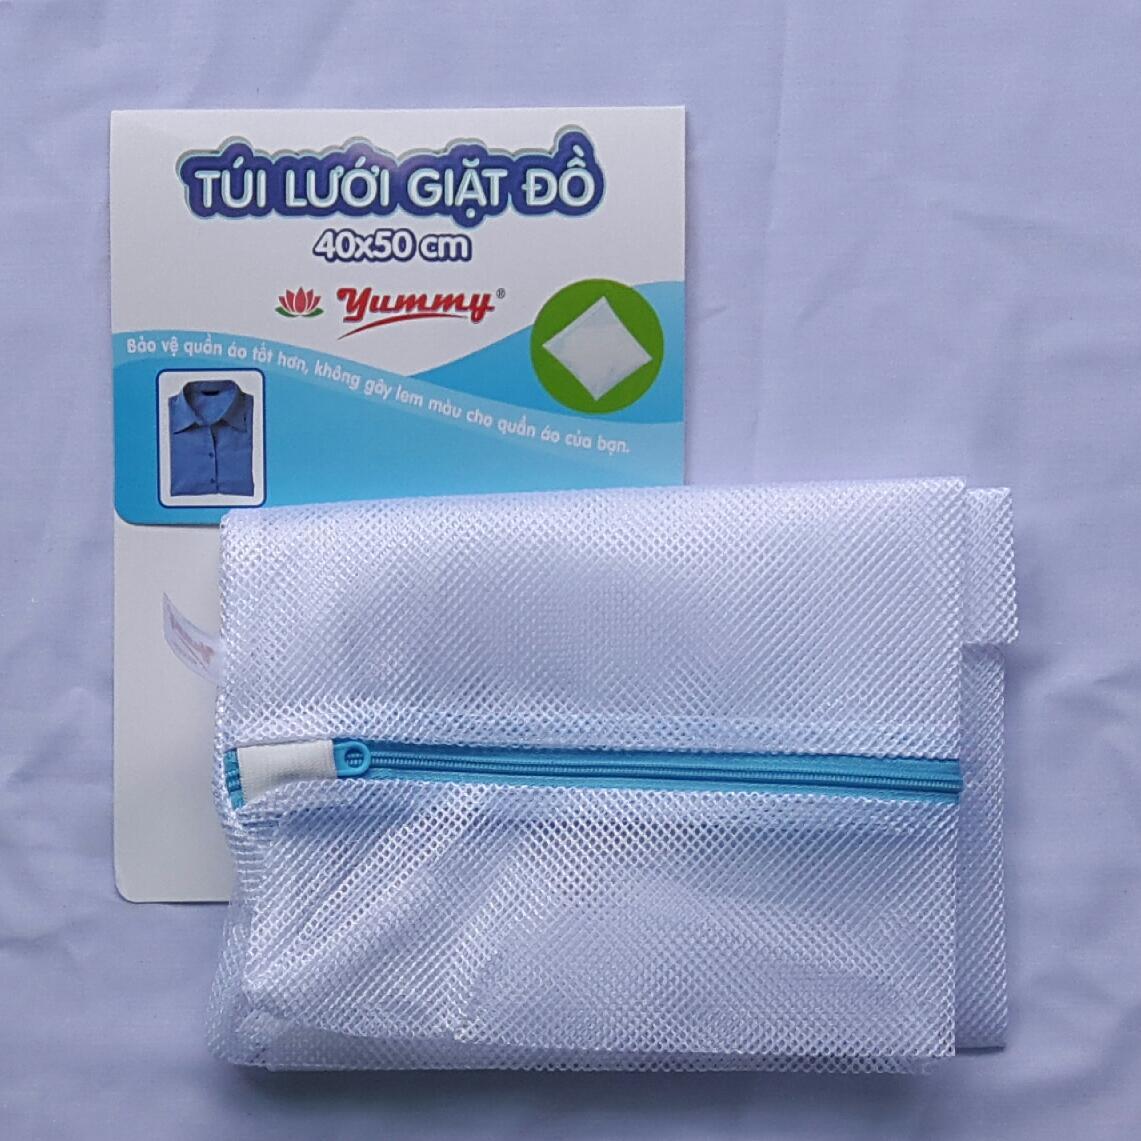 Túi lưới giặt đồ Jummy 40x50cm Chất liệu 100% polyester cao cấp hàng Việt